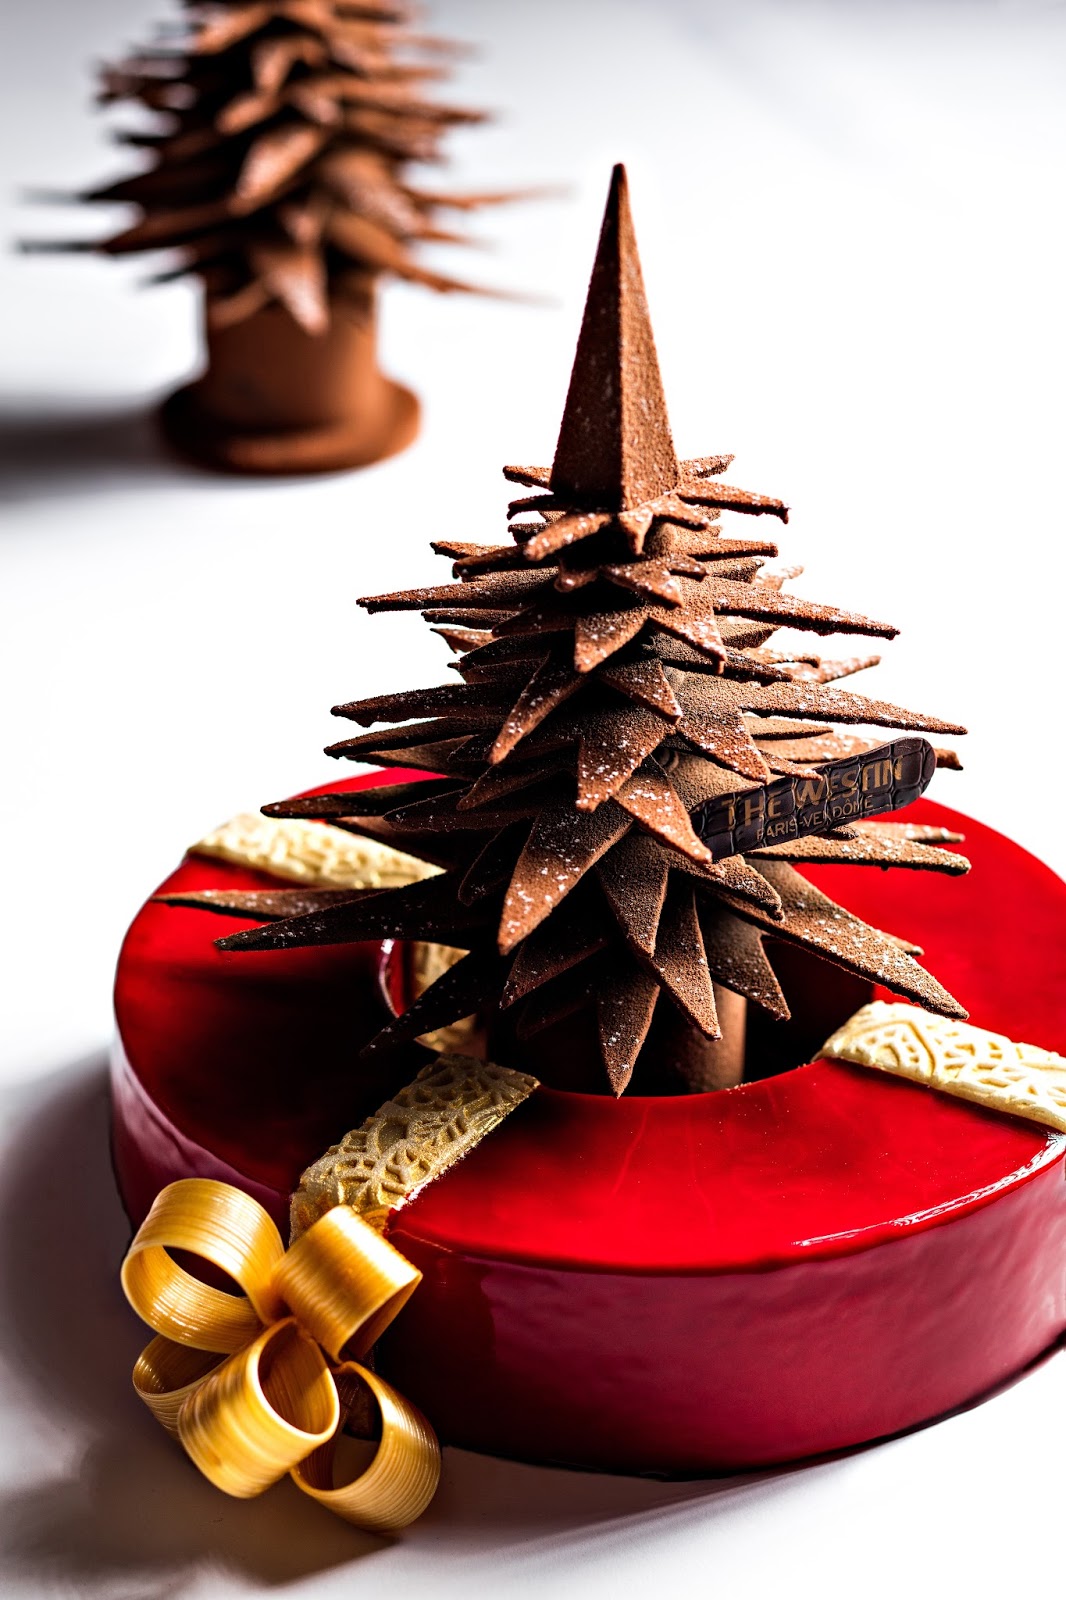 Choco decoration на русском. Шоколад и украшение его в Рождество и новый год в упаковку. Что сделать из шоколада на Рождество на продажу. Amazing cool Chocolate decoration.